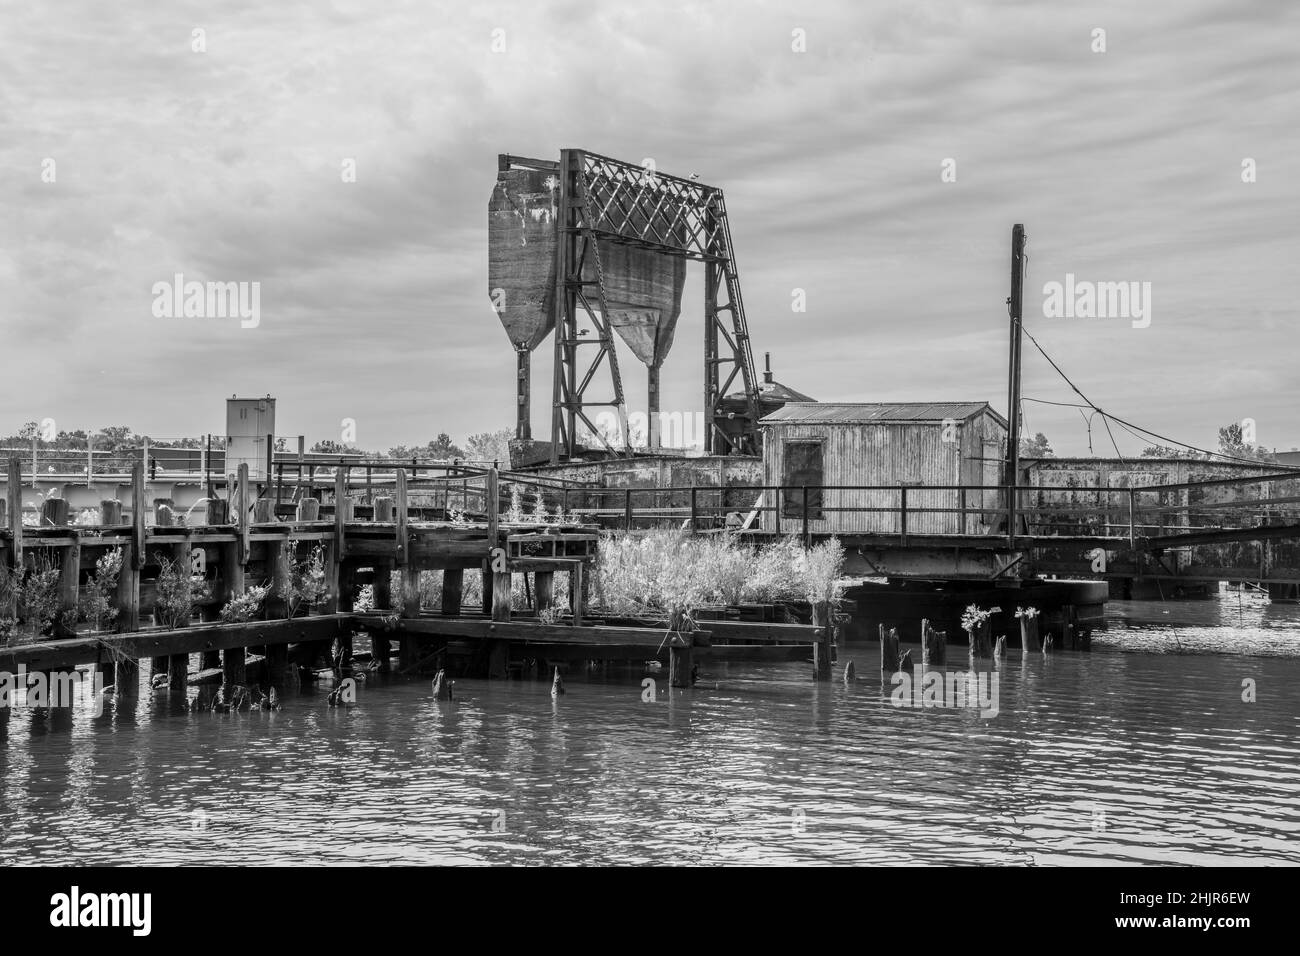 Eine alte Bascule-Eisenbahnbrücke (auch als Zugbrücke oder Hebebrücke bezeichnet) an einem grauen Tag mit einem Gegengewicht. In schwarz und weiß. Stockfoto